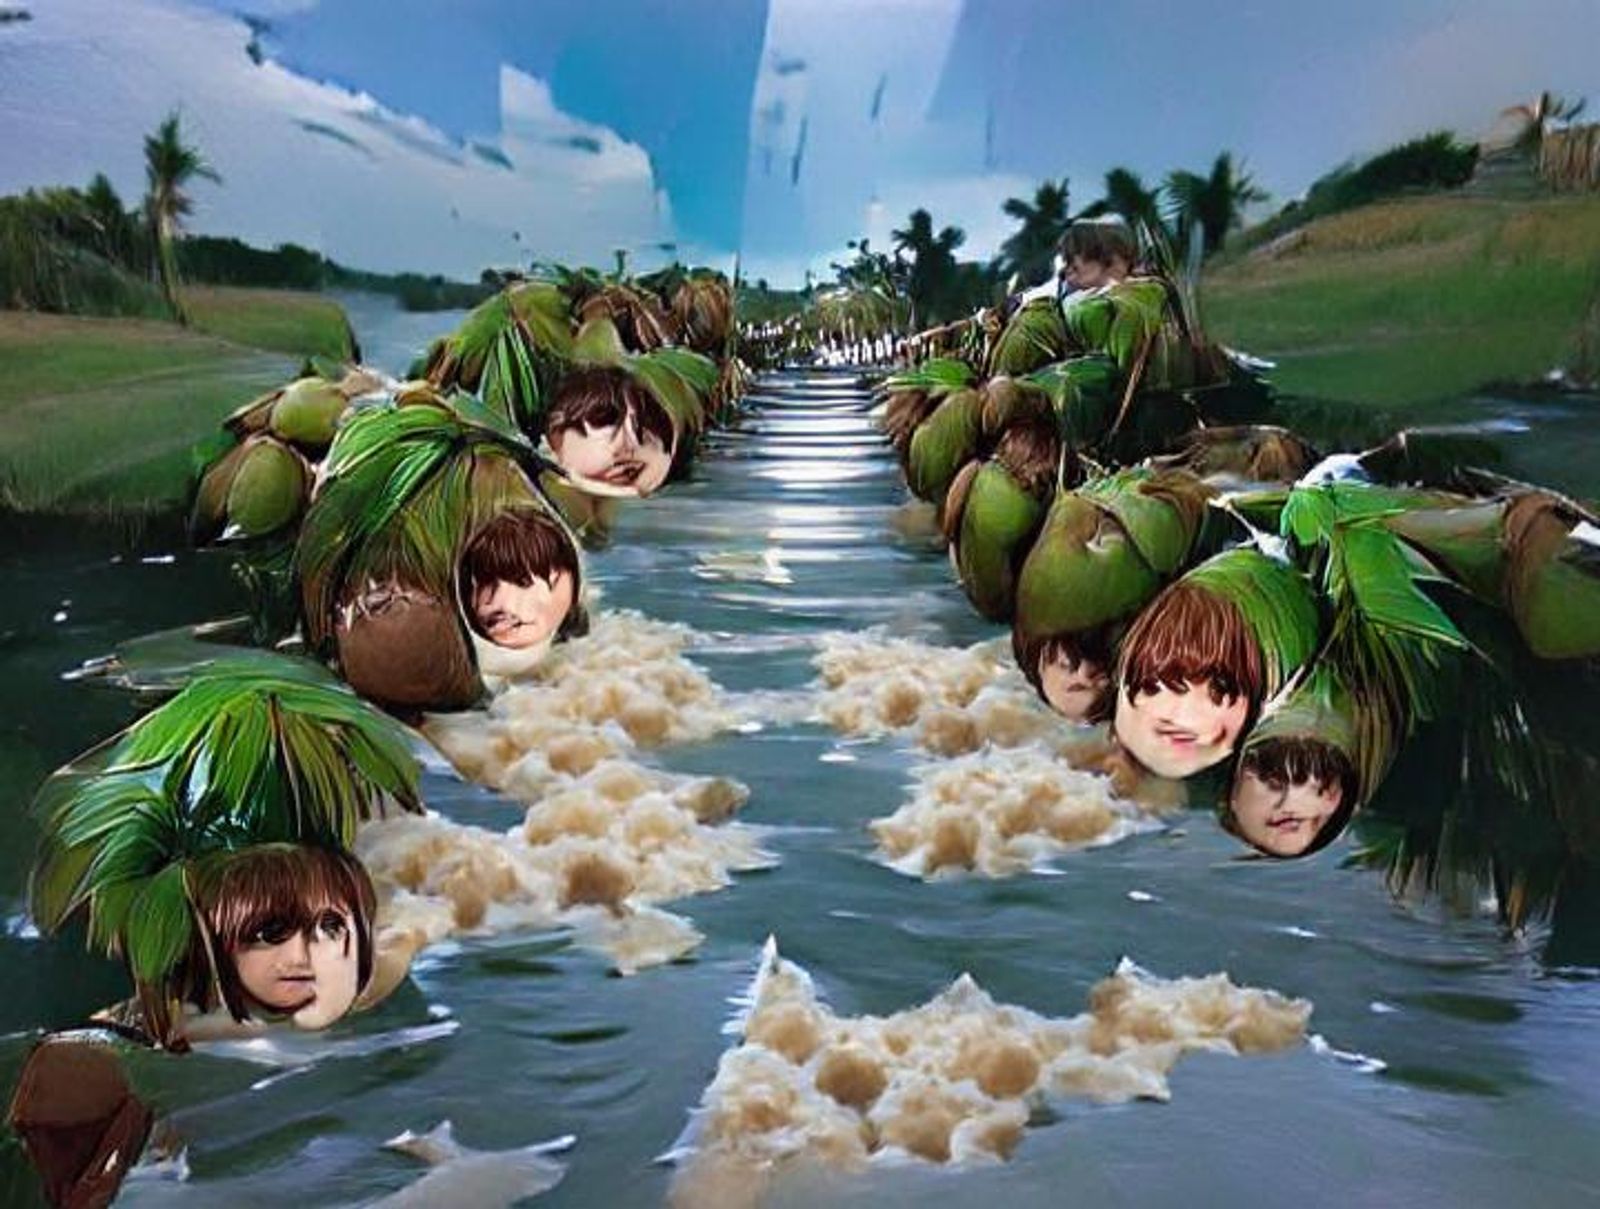 weeping coconuts